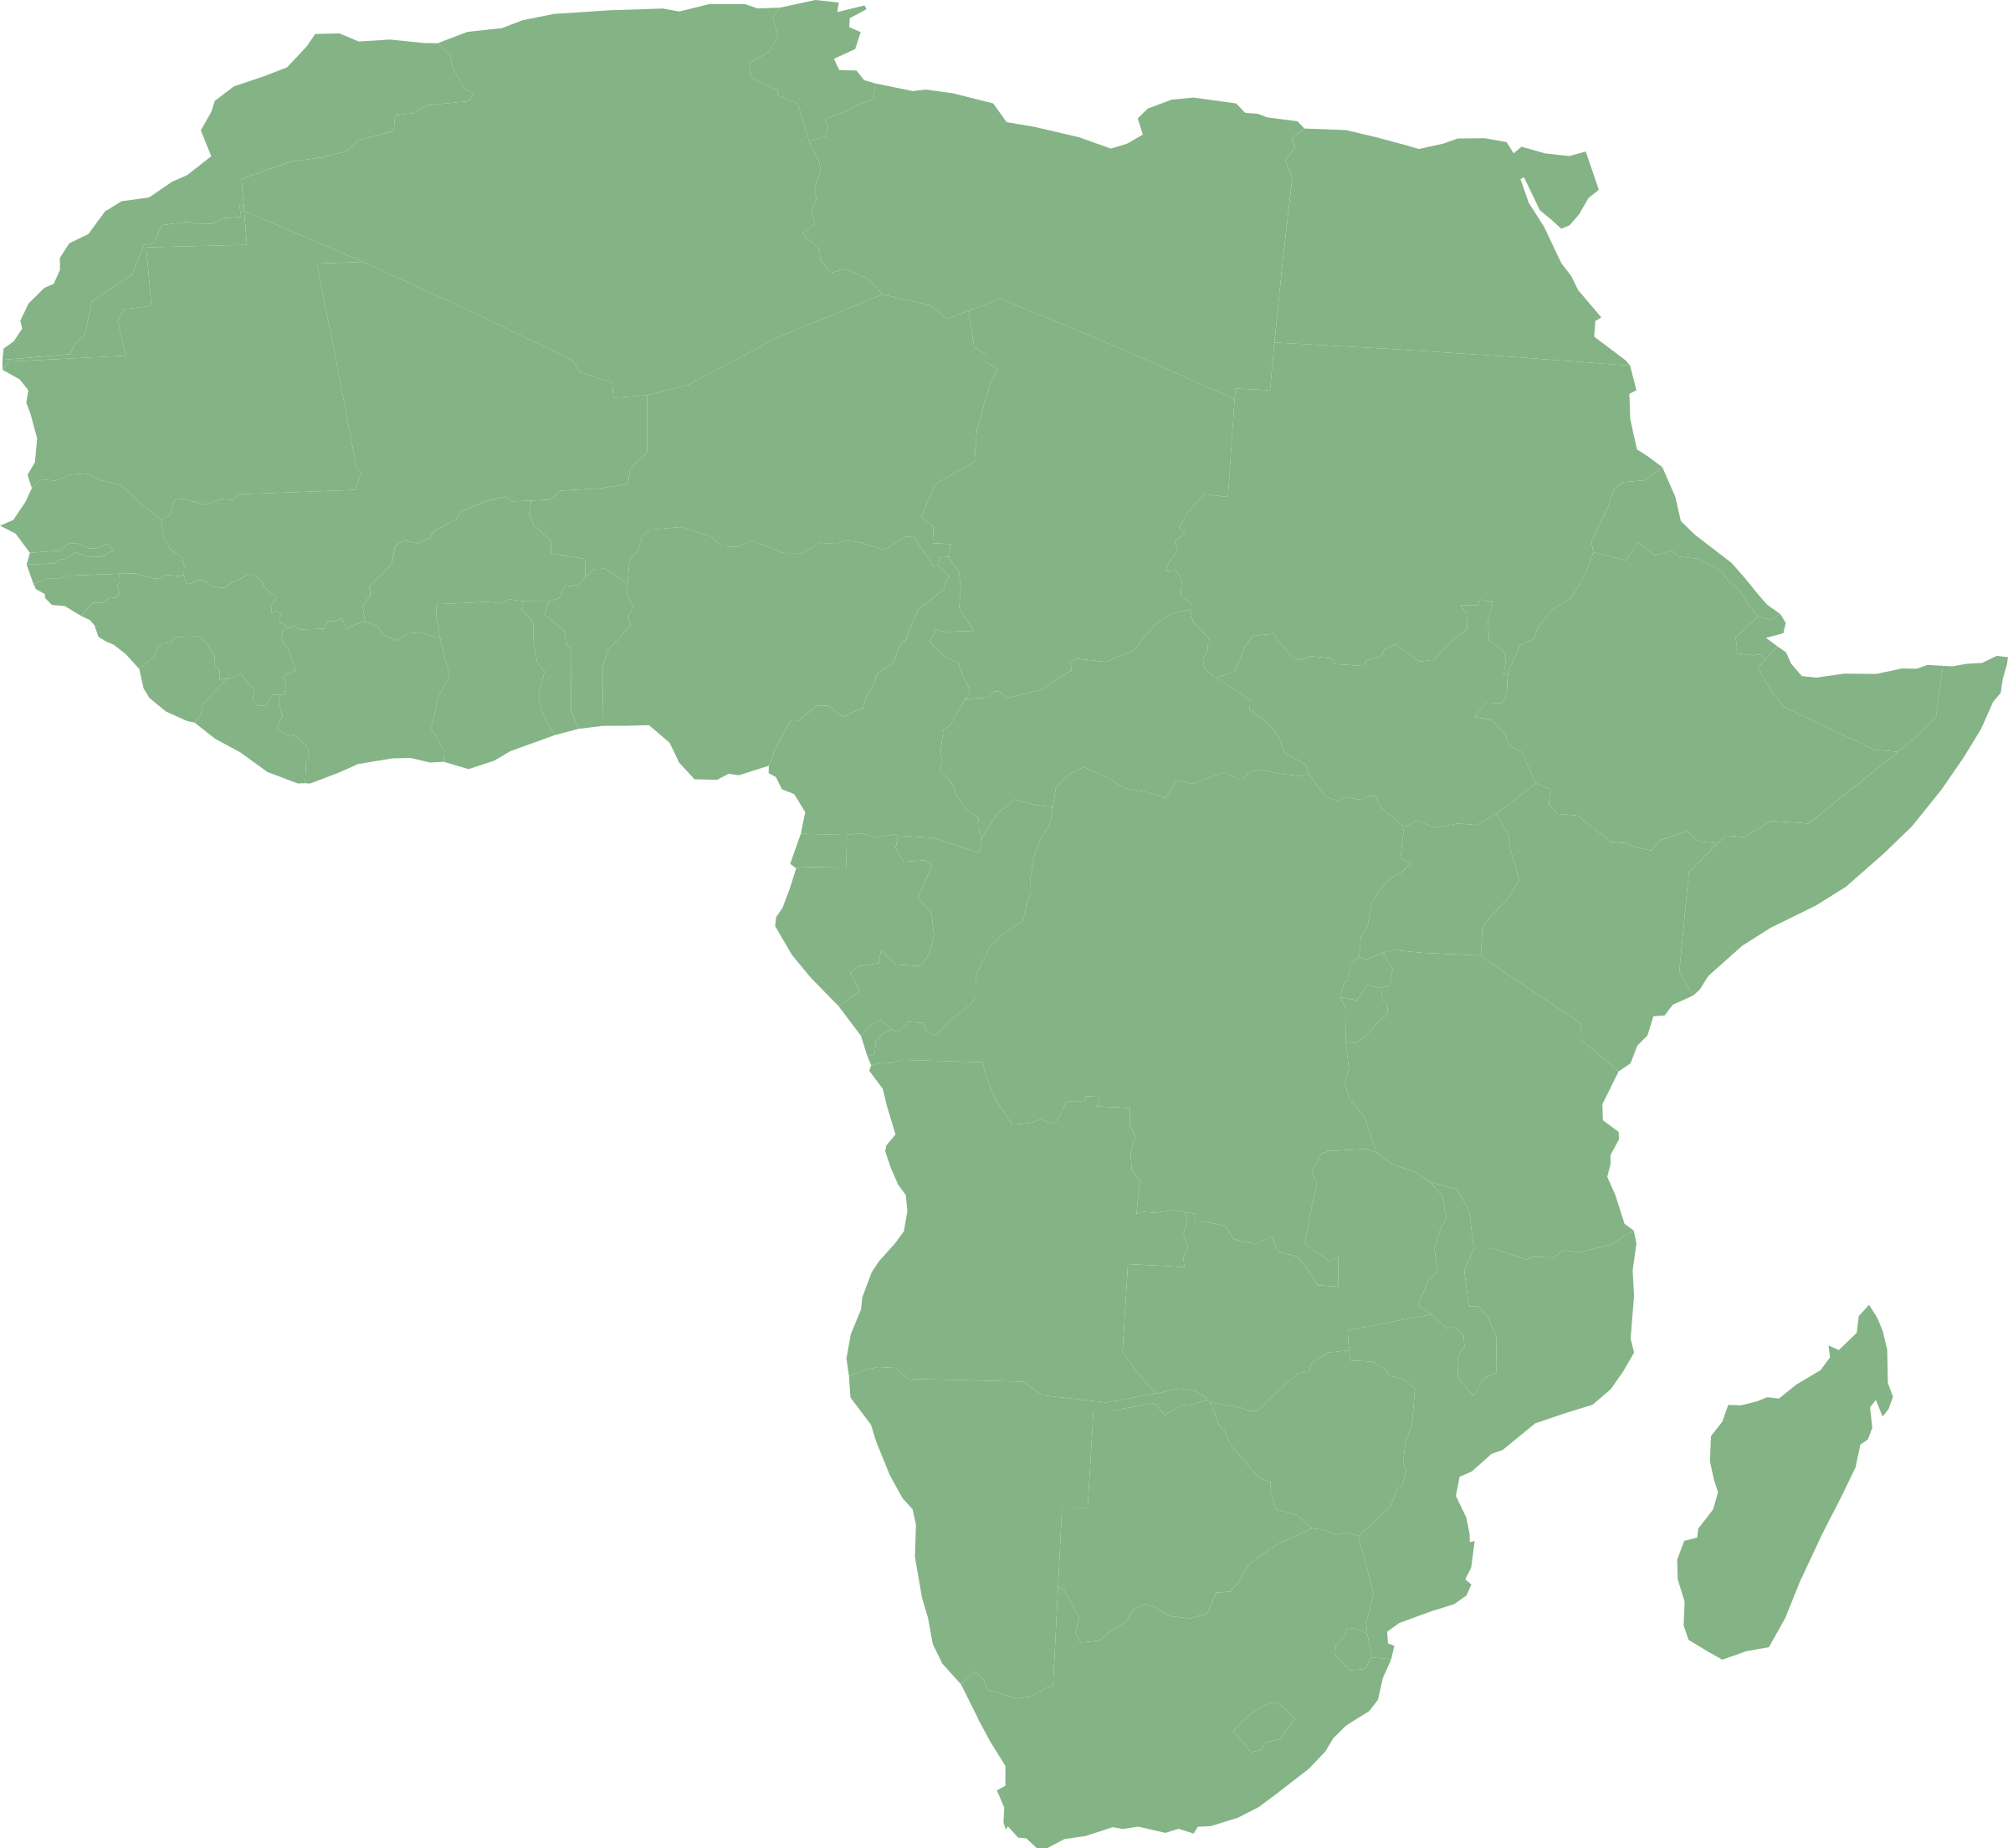 Africa-green